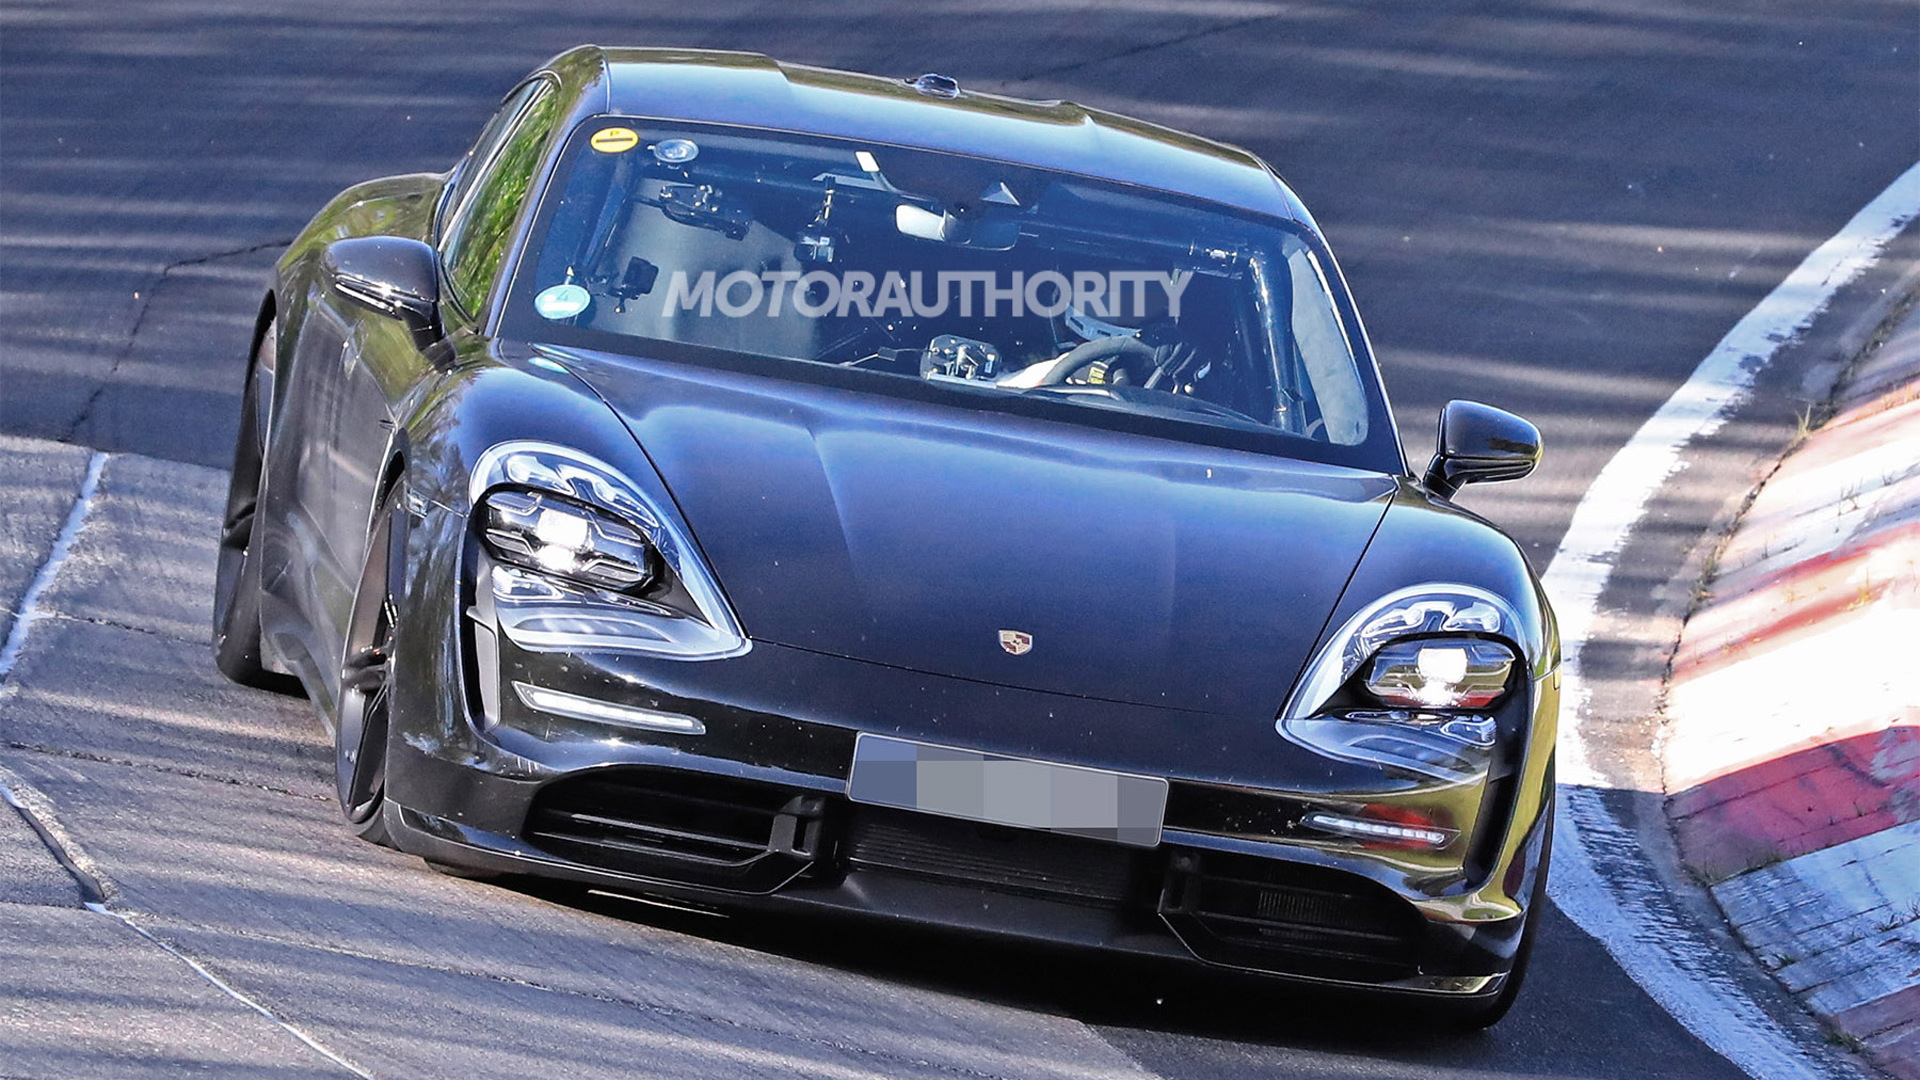 2020 Porsche Taycan spy shots - Image via S. Baldauf/SB-Medien